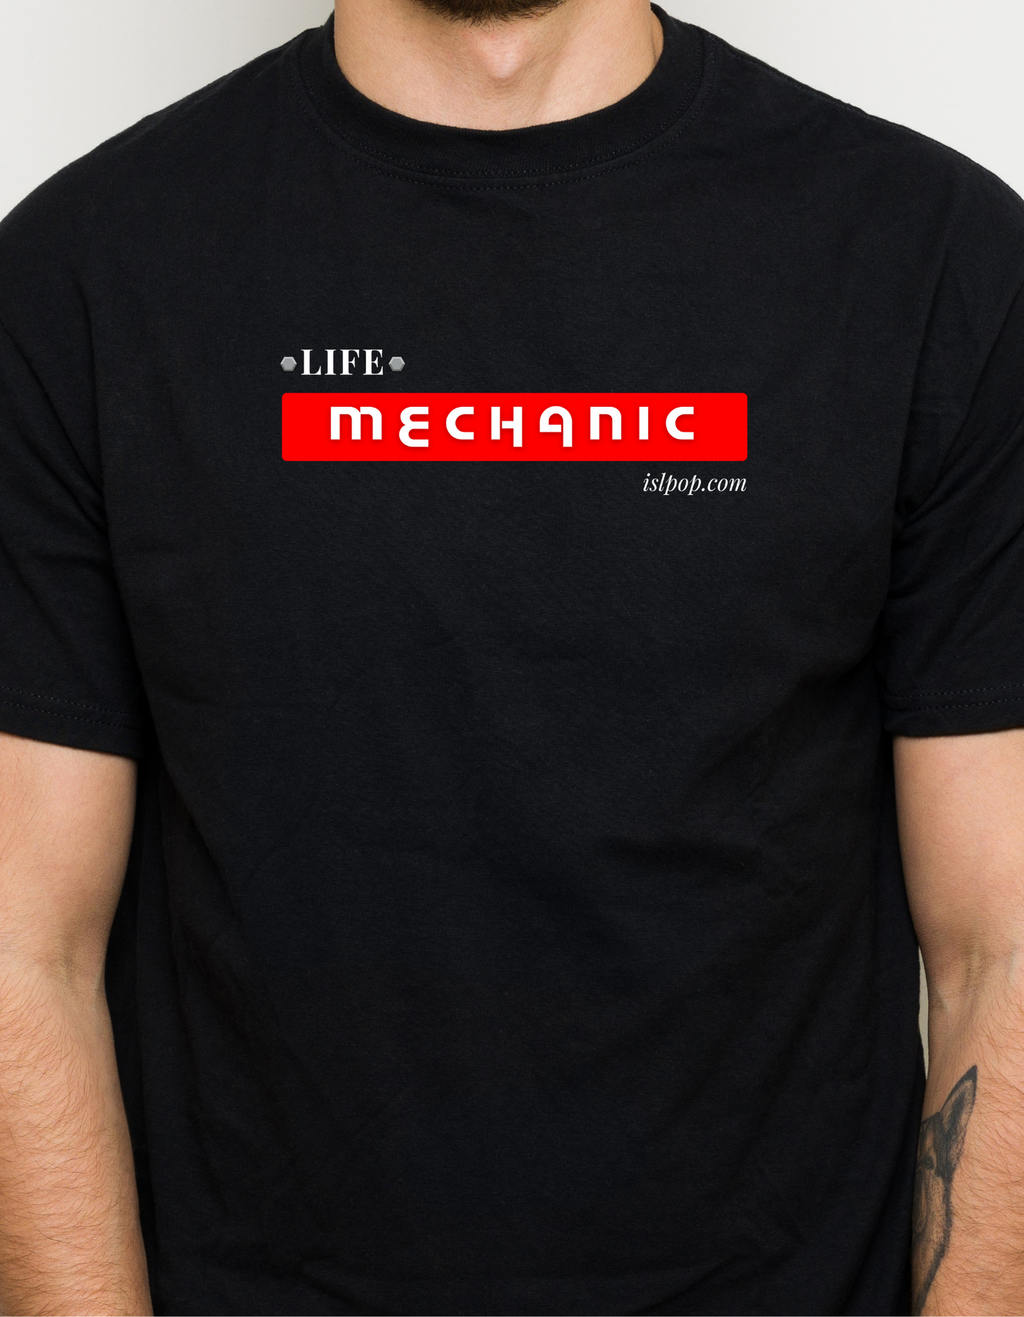 Life Mechanic Tshirt Unisex